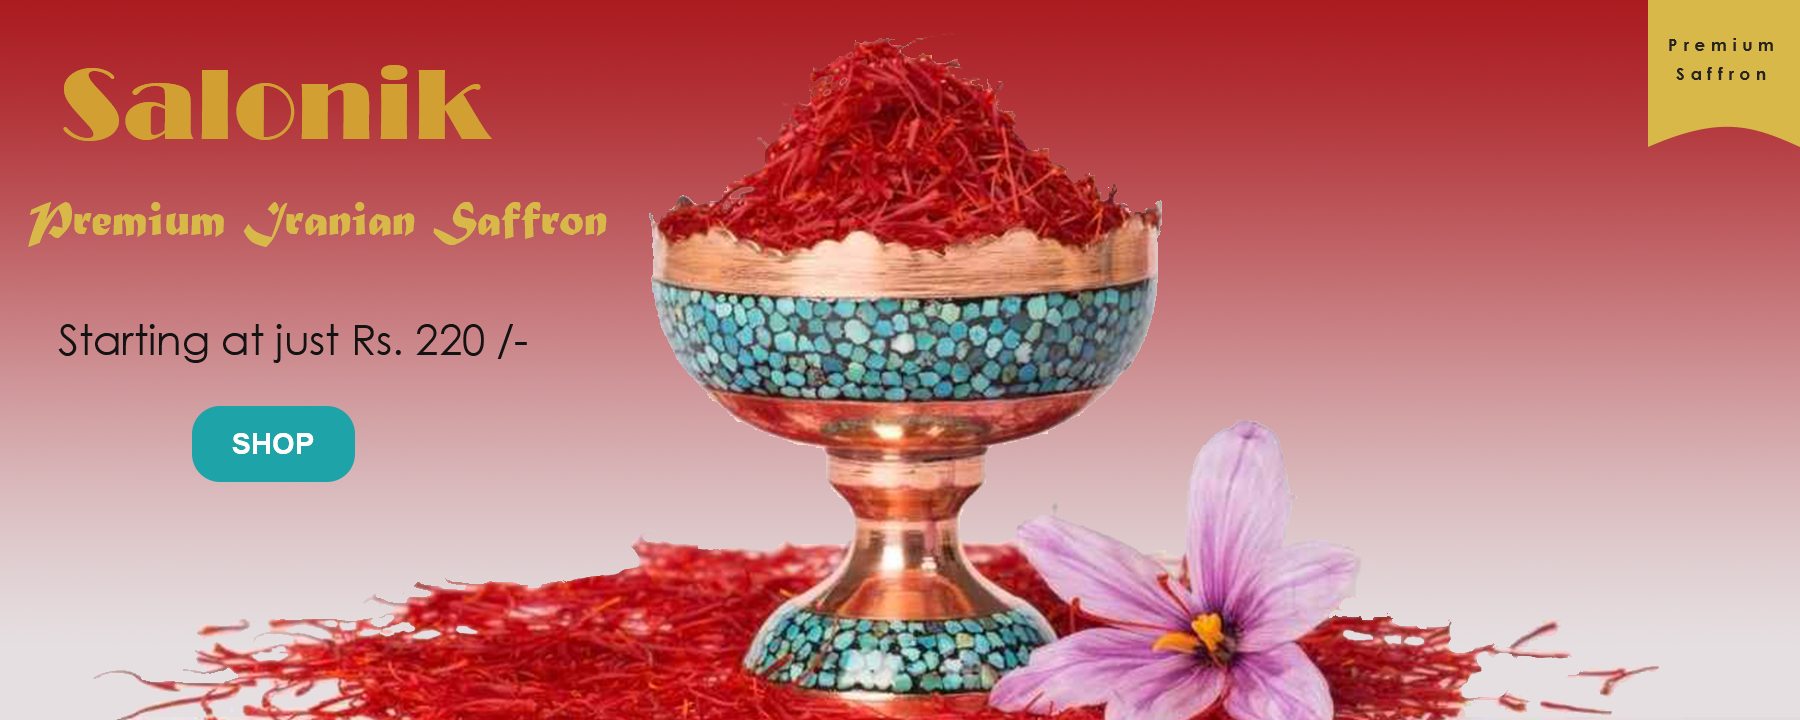 Buy saffron online